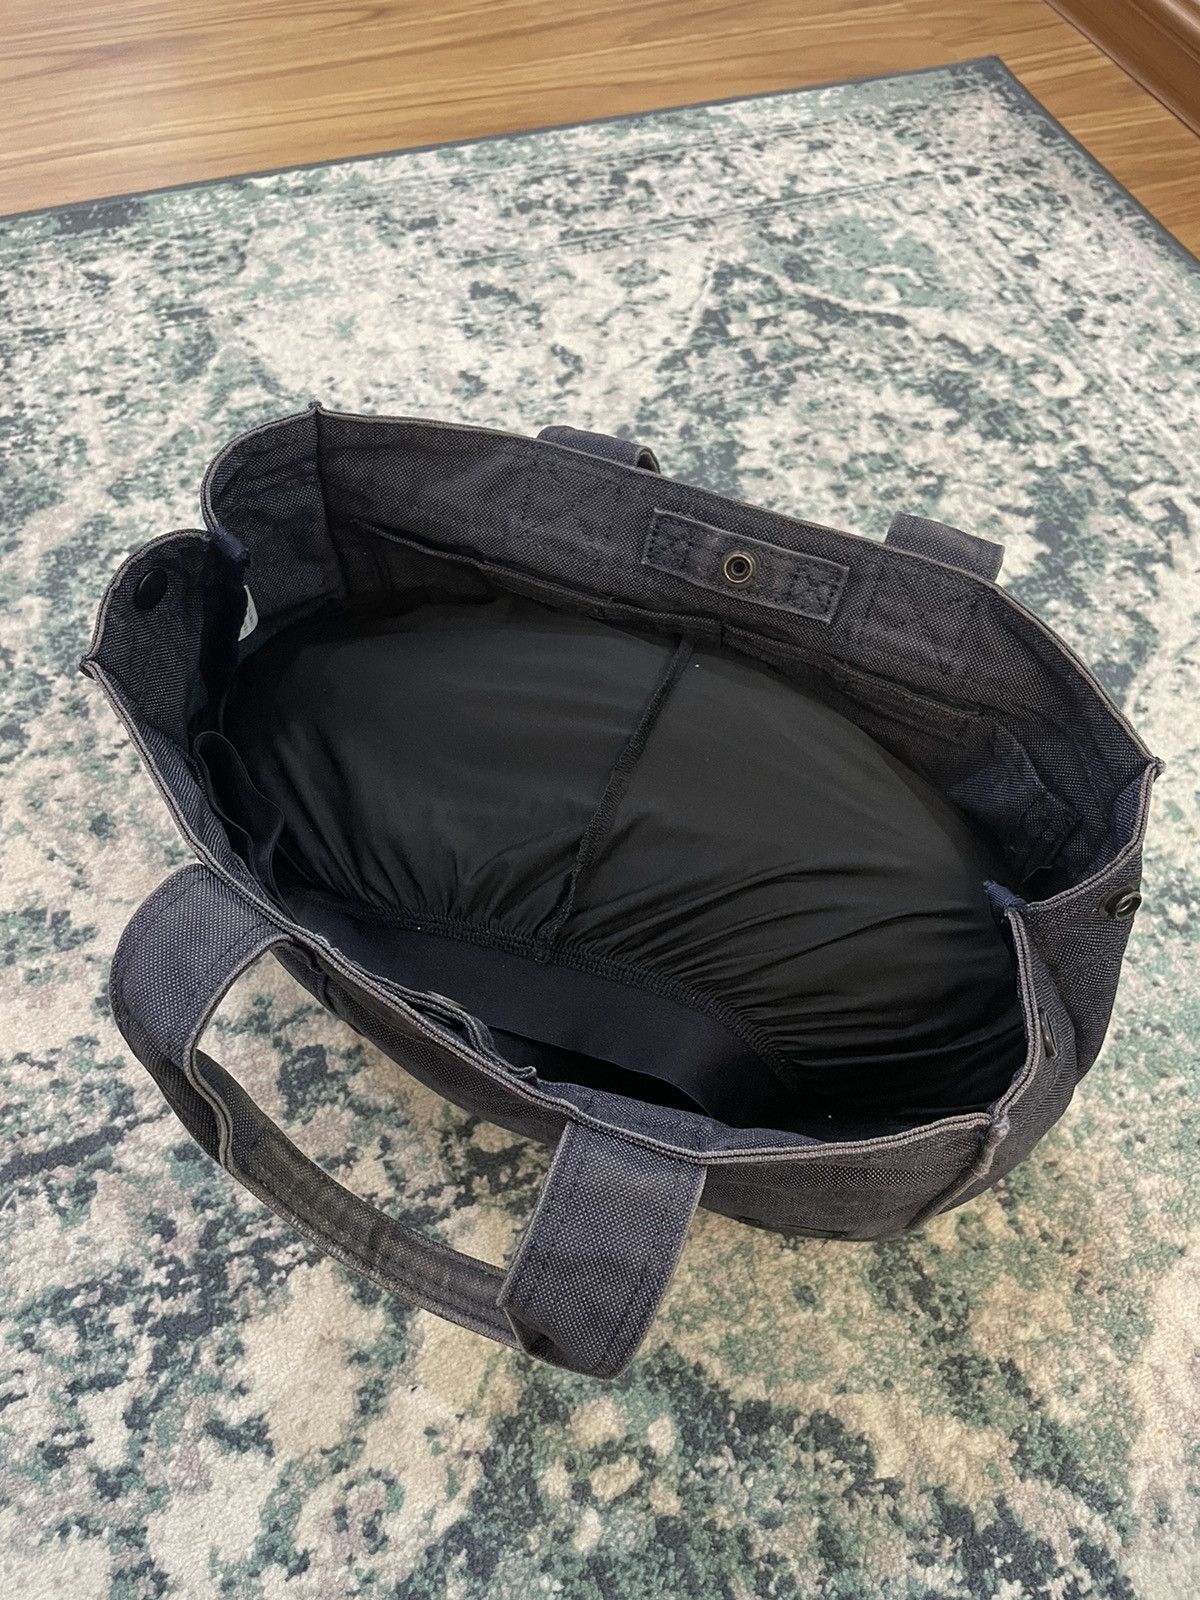 Porter Made In Japan Black Denim Tote Bag Denim Material - 17